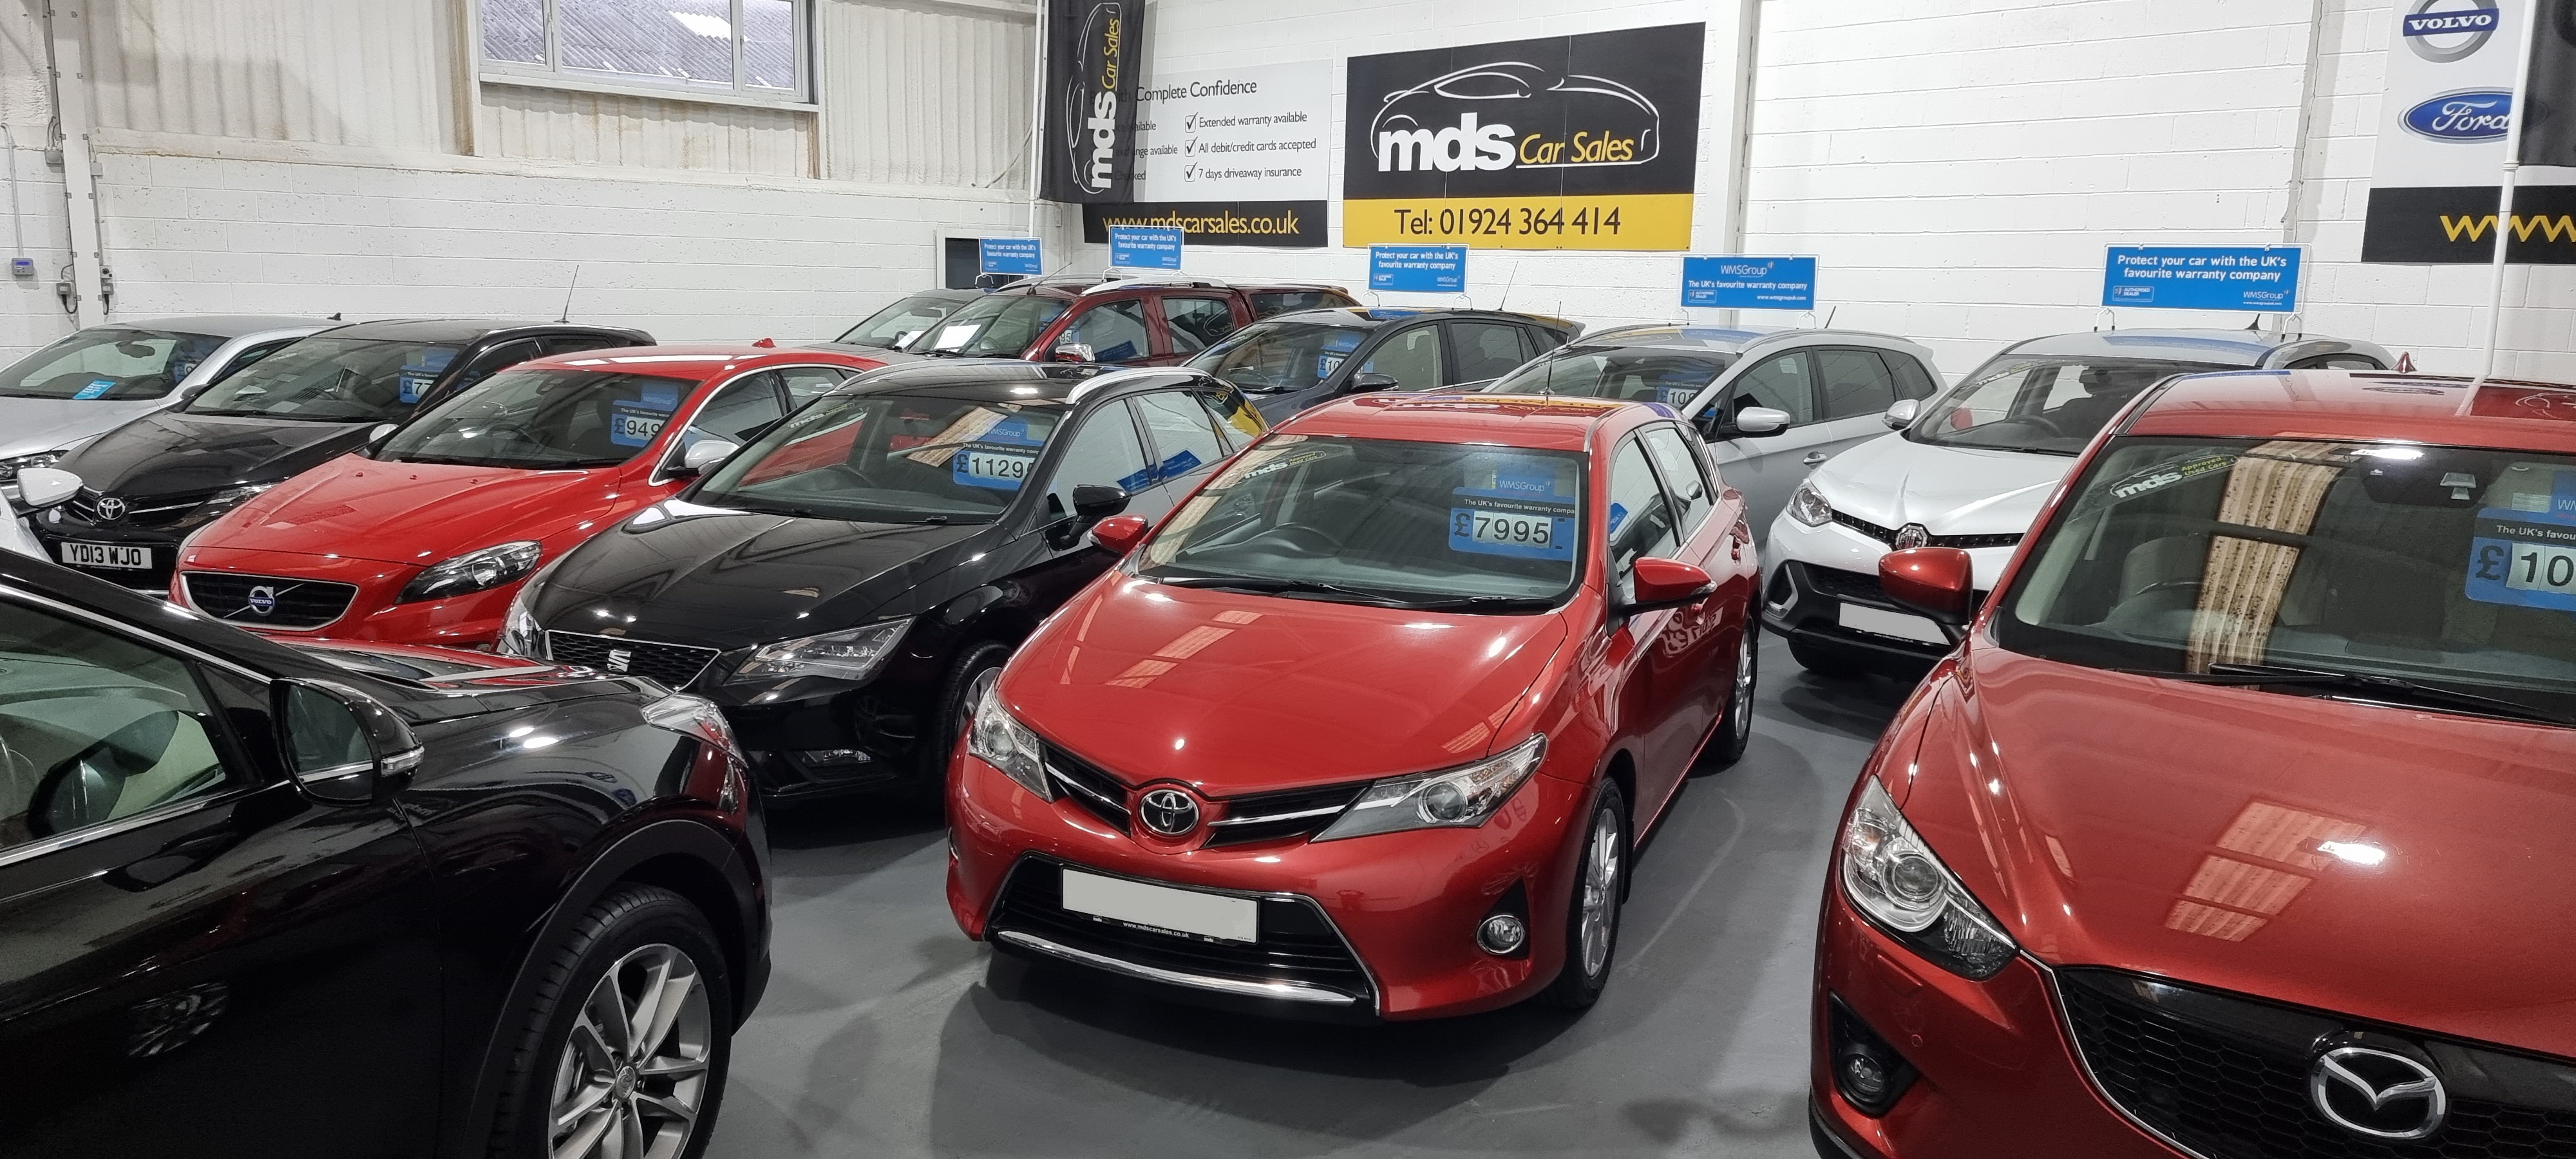 MDS Car Sales